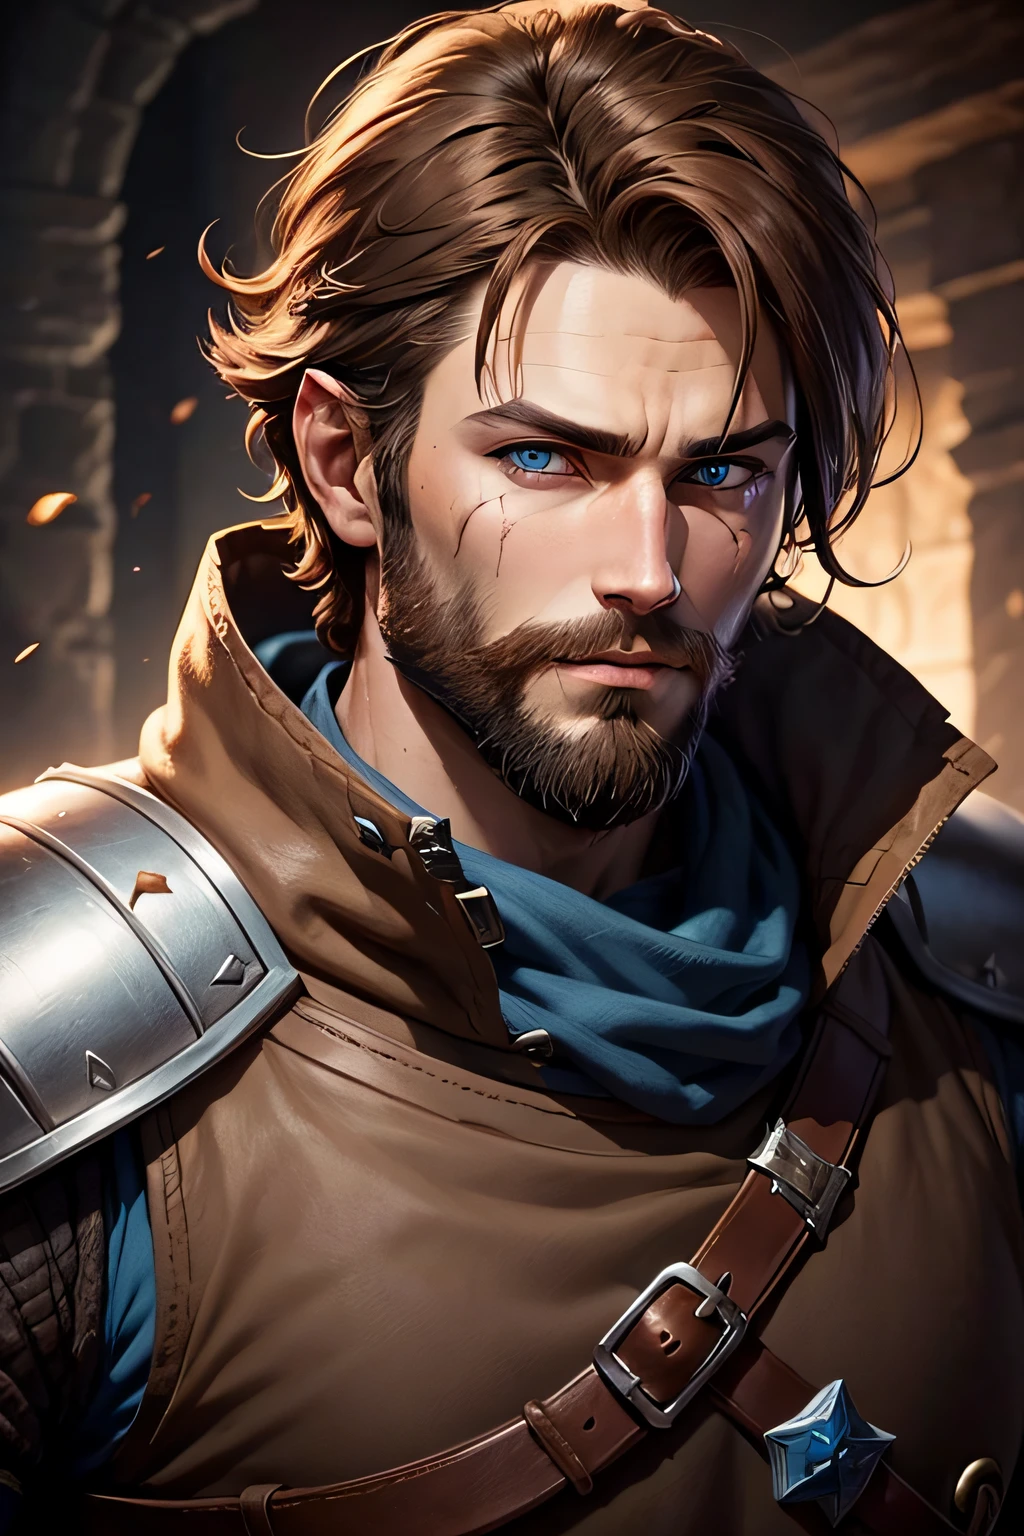 Dnd lutador, 1 homem, cabelo castanho, barba castanha, olhos azuis, cicatriz sobre o olho esquerdo, armadura de cavaleiro